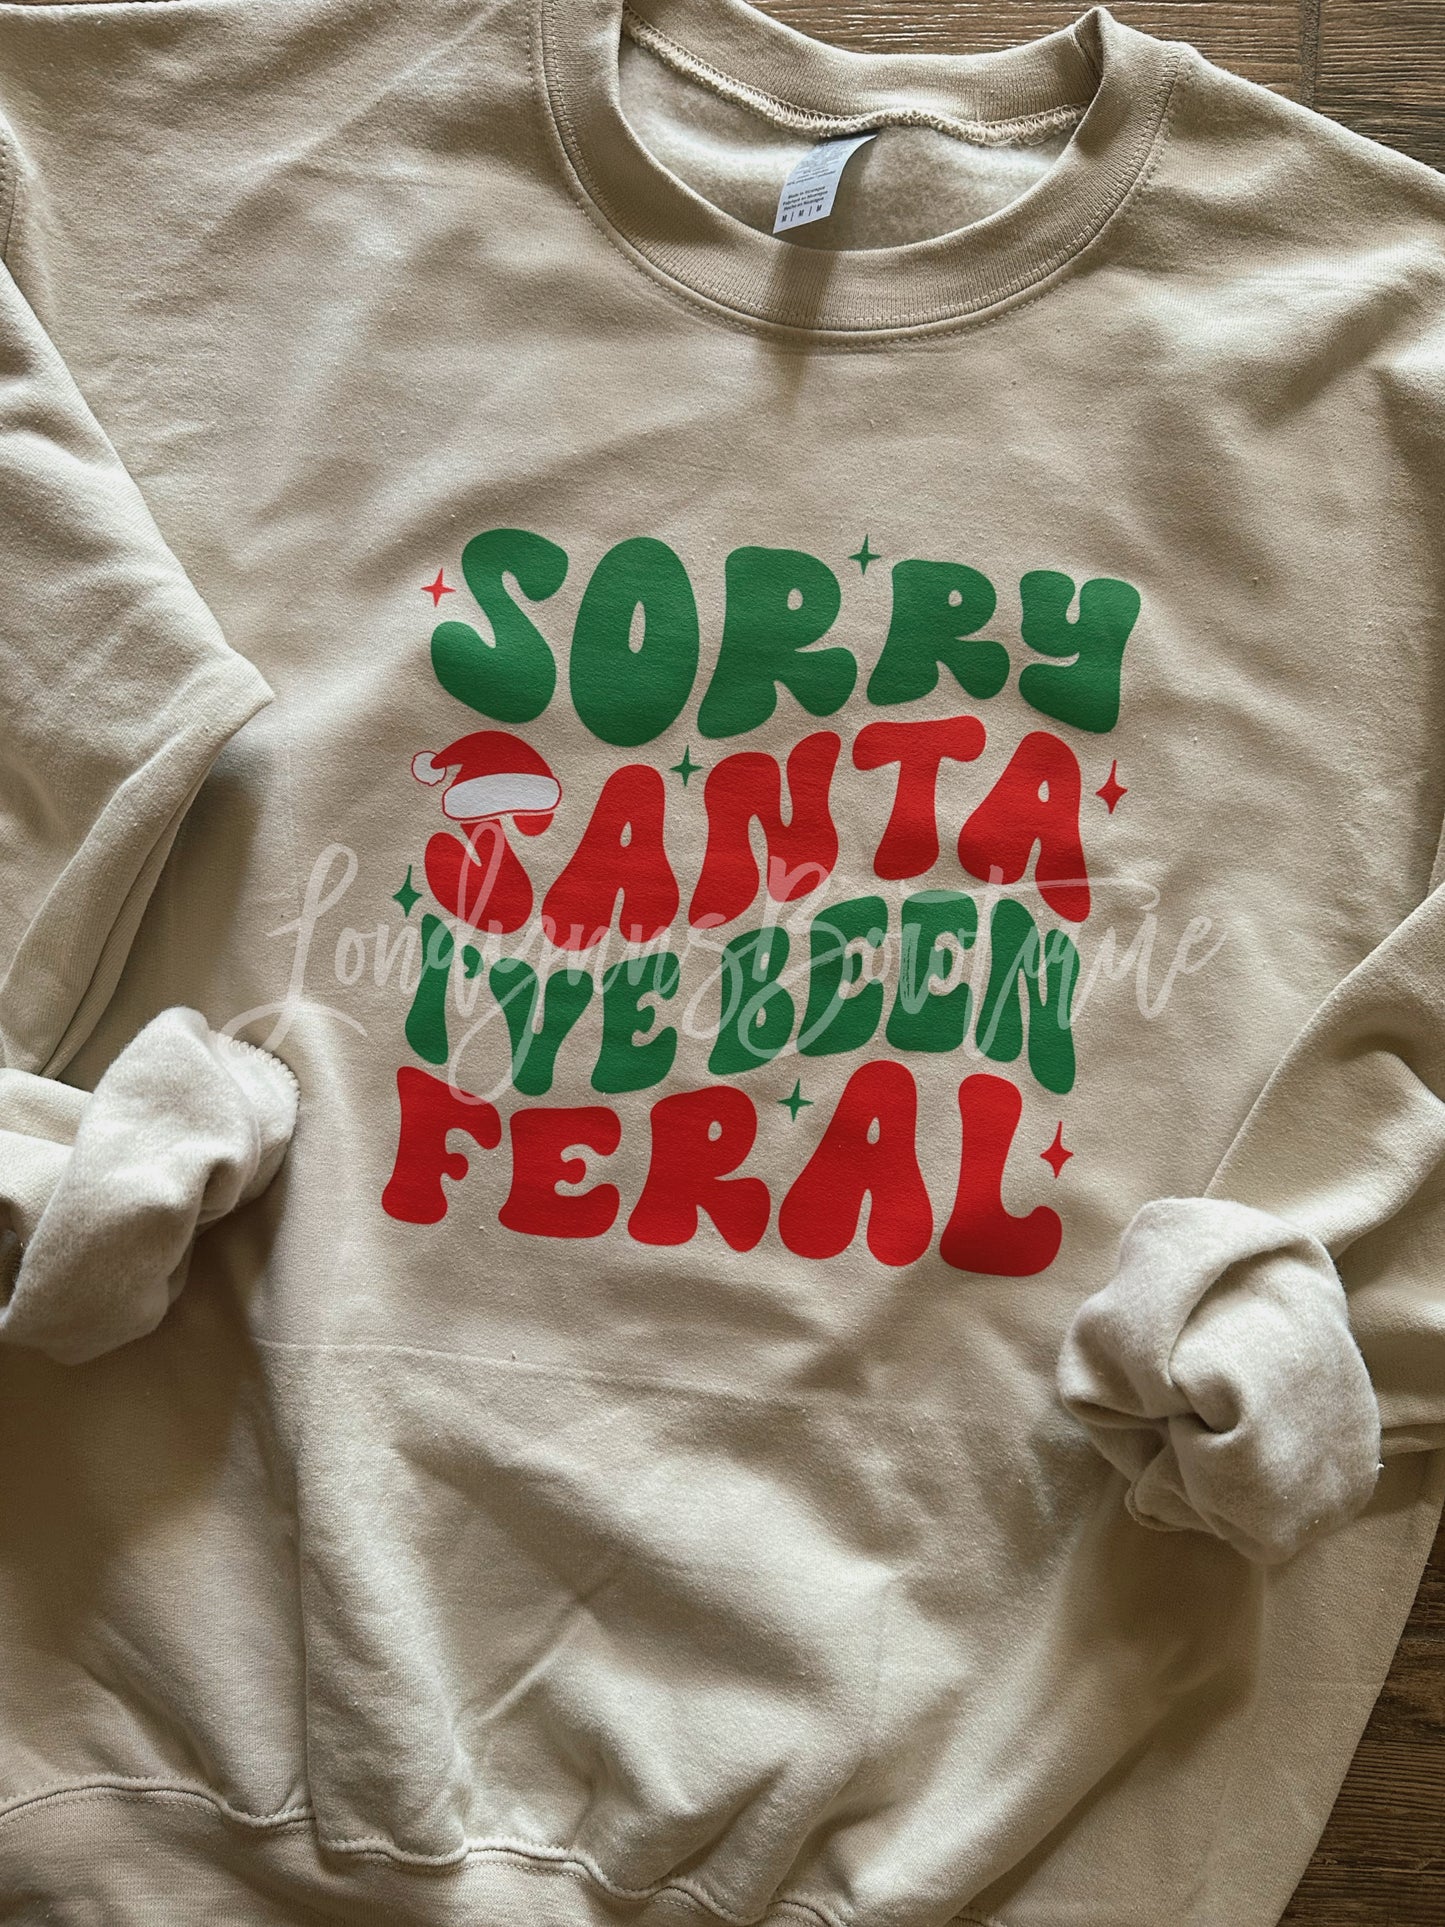 Sorry Santa I’ve been  feral